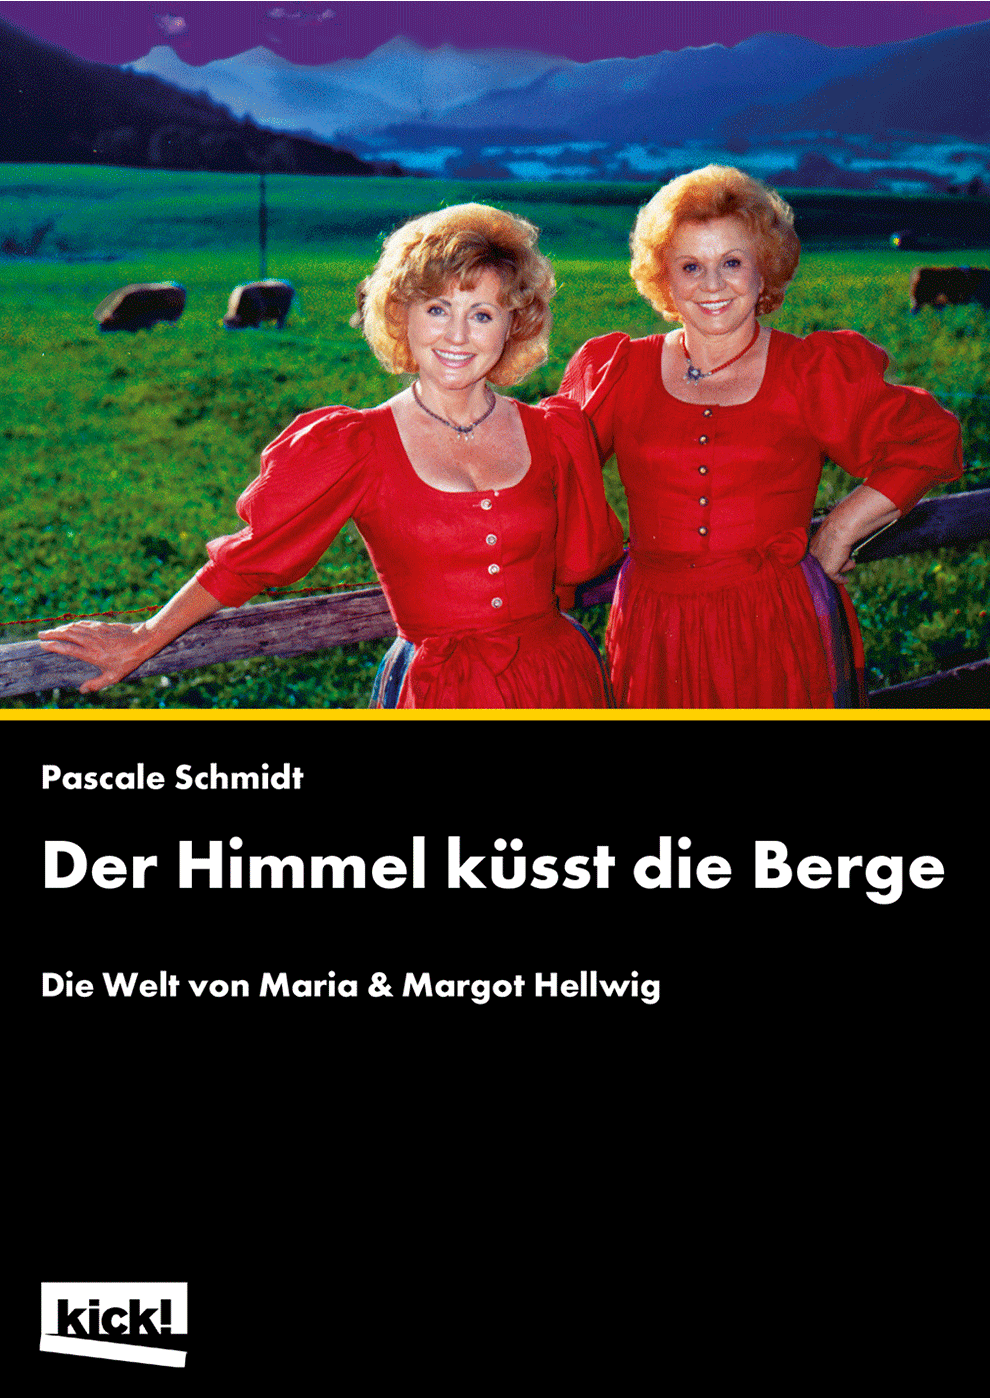 DER HIMMEL KÜSST DIE BERGE Maria & Margot Hellwig Ein Film von Pascale Schmidt